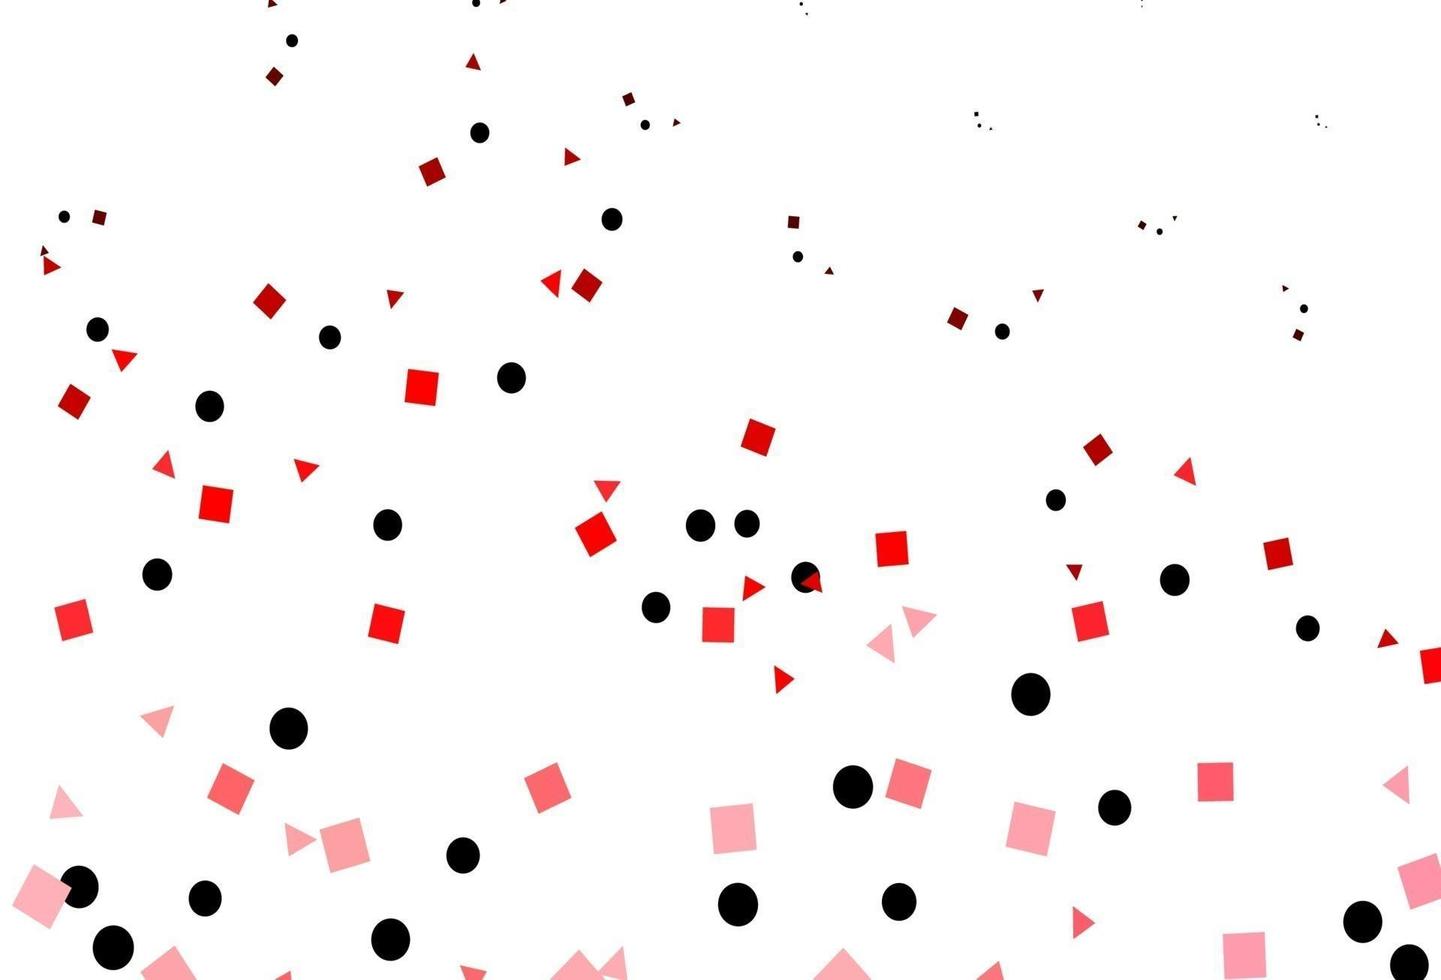 copertina vettoriale rosso chiaro in stile poligonale con cerchi.